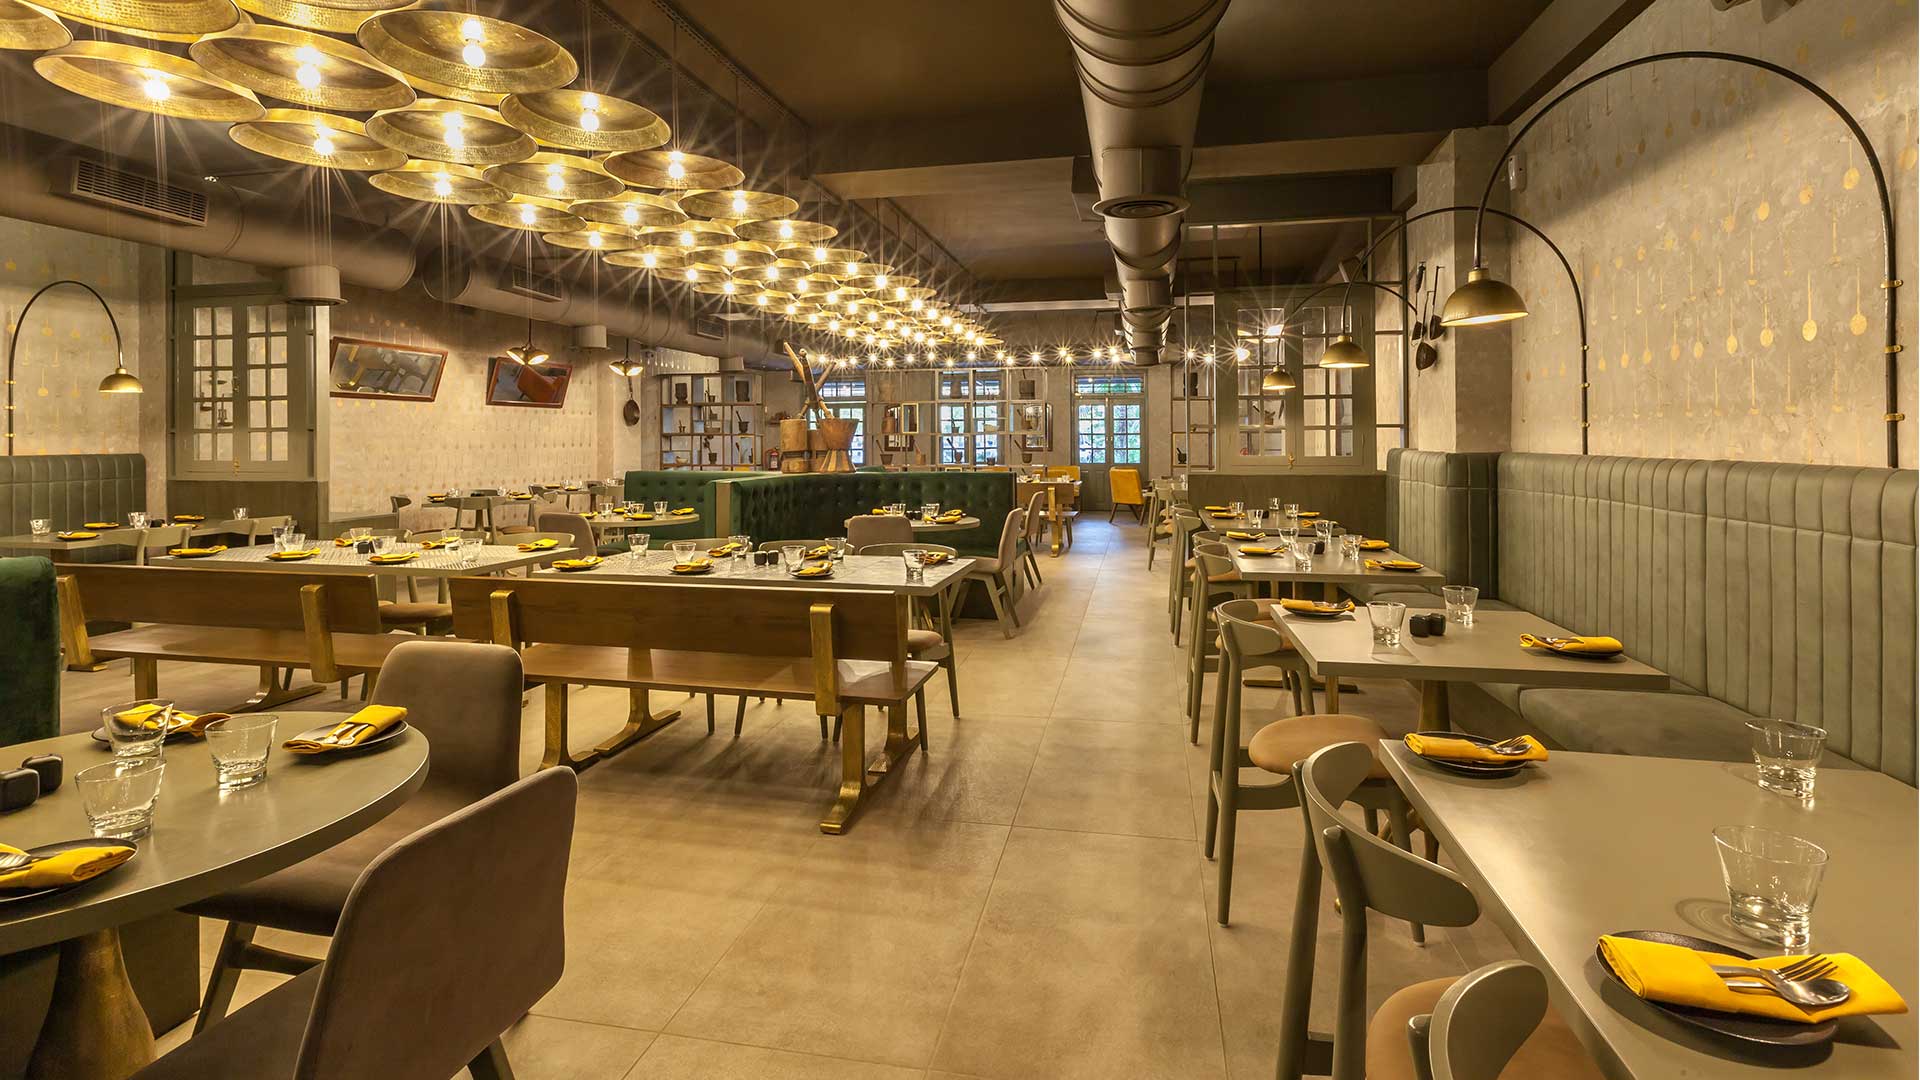 Restaurant Interior Design Ideas To Make Your Restaurant